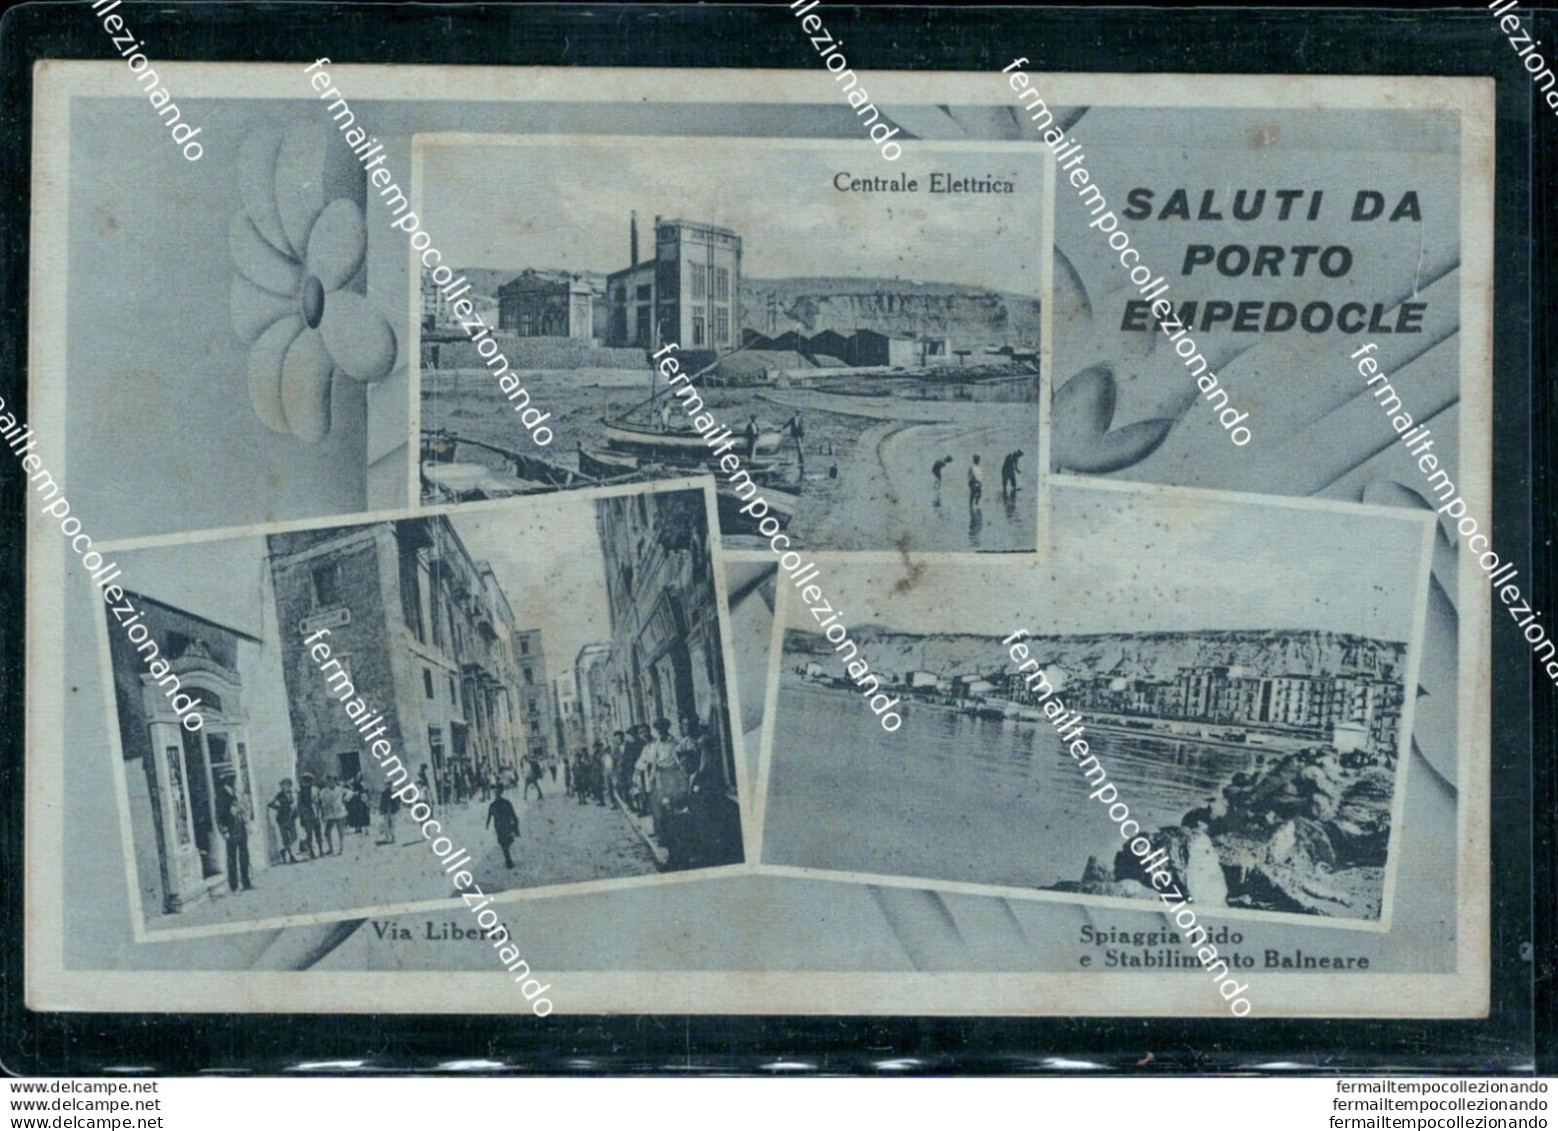 An699 Cartolina Saluti Da Porto Empedocle Scollata Provincia Di Agrigento - Agrigento